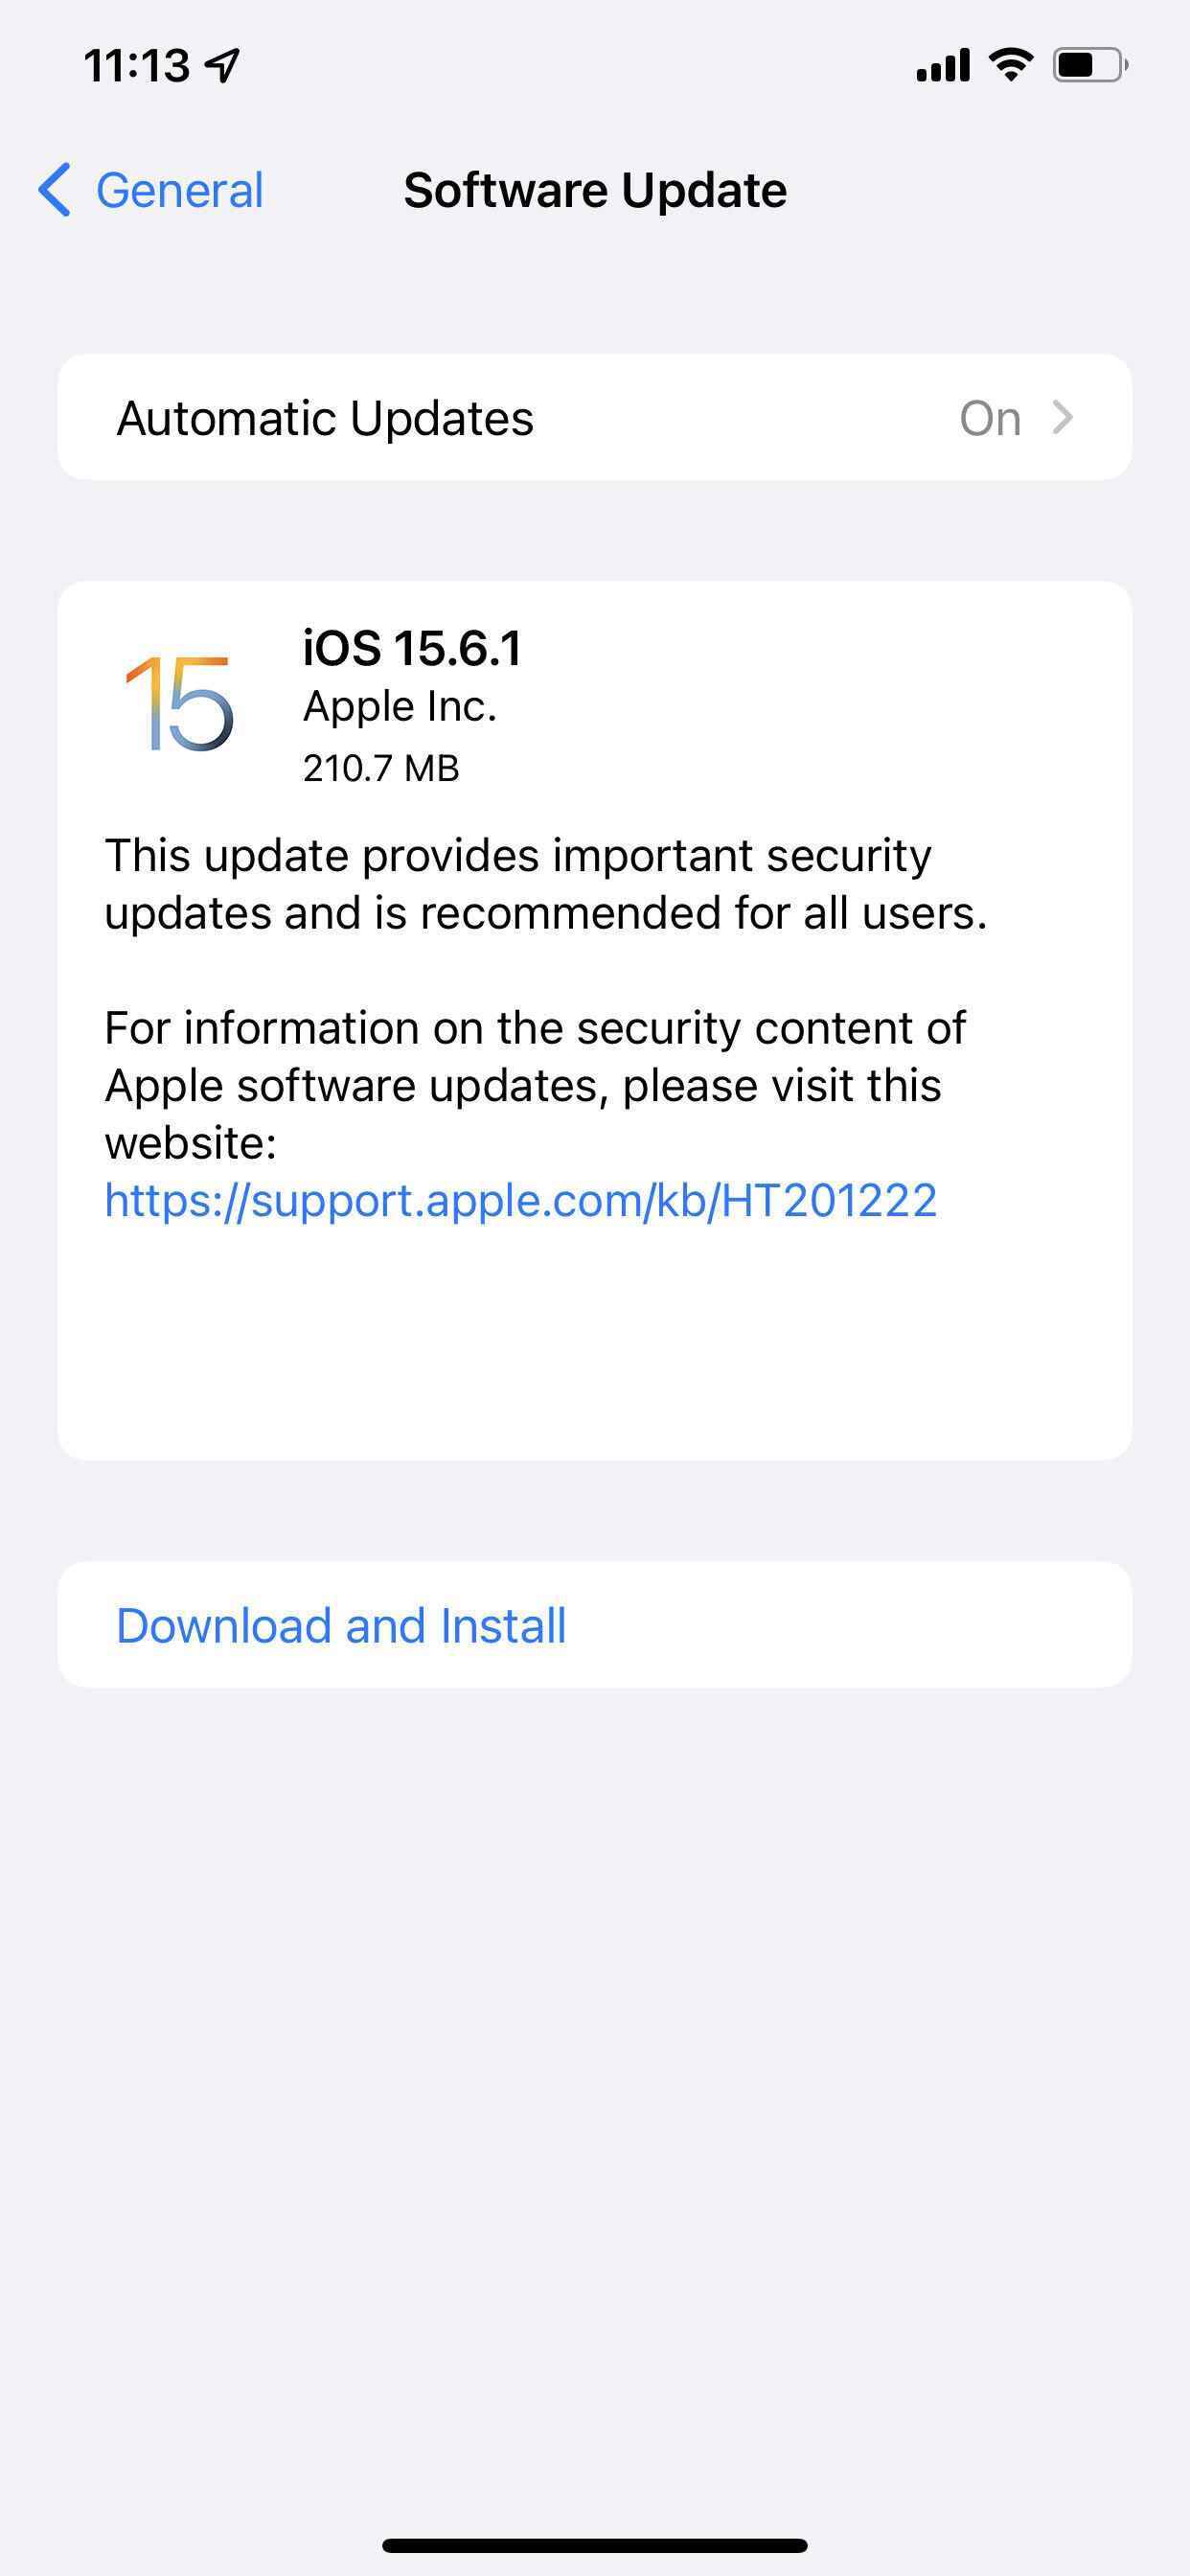 Büyük bir güvenlik açığını düzeltmek için iPhone ve iPad'inizi iOS 15.6.1'e güncelleyin - iPhone ve iPad'inizi neden en kısa sürede güncellemeniz gerekiyor!